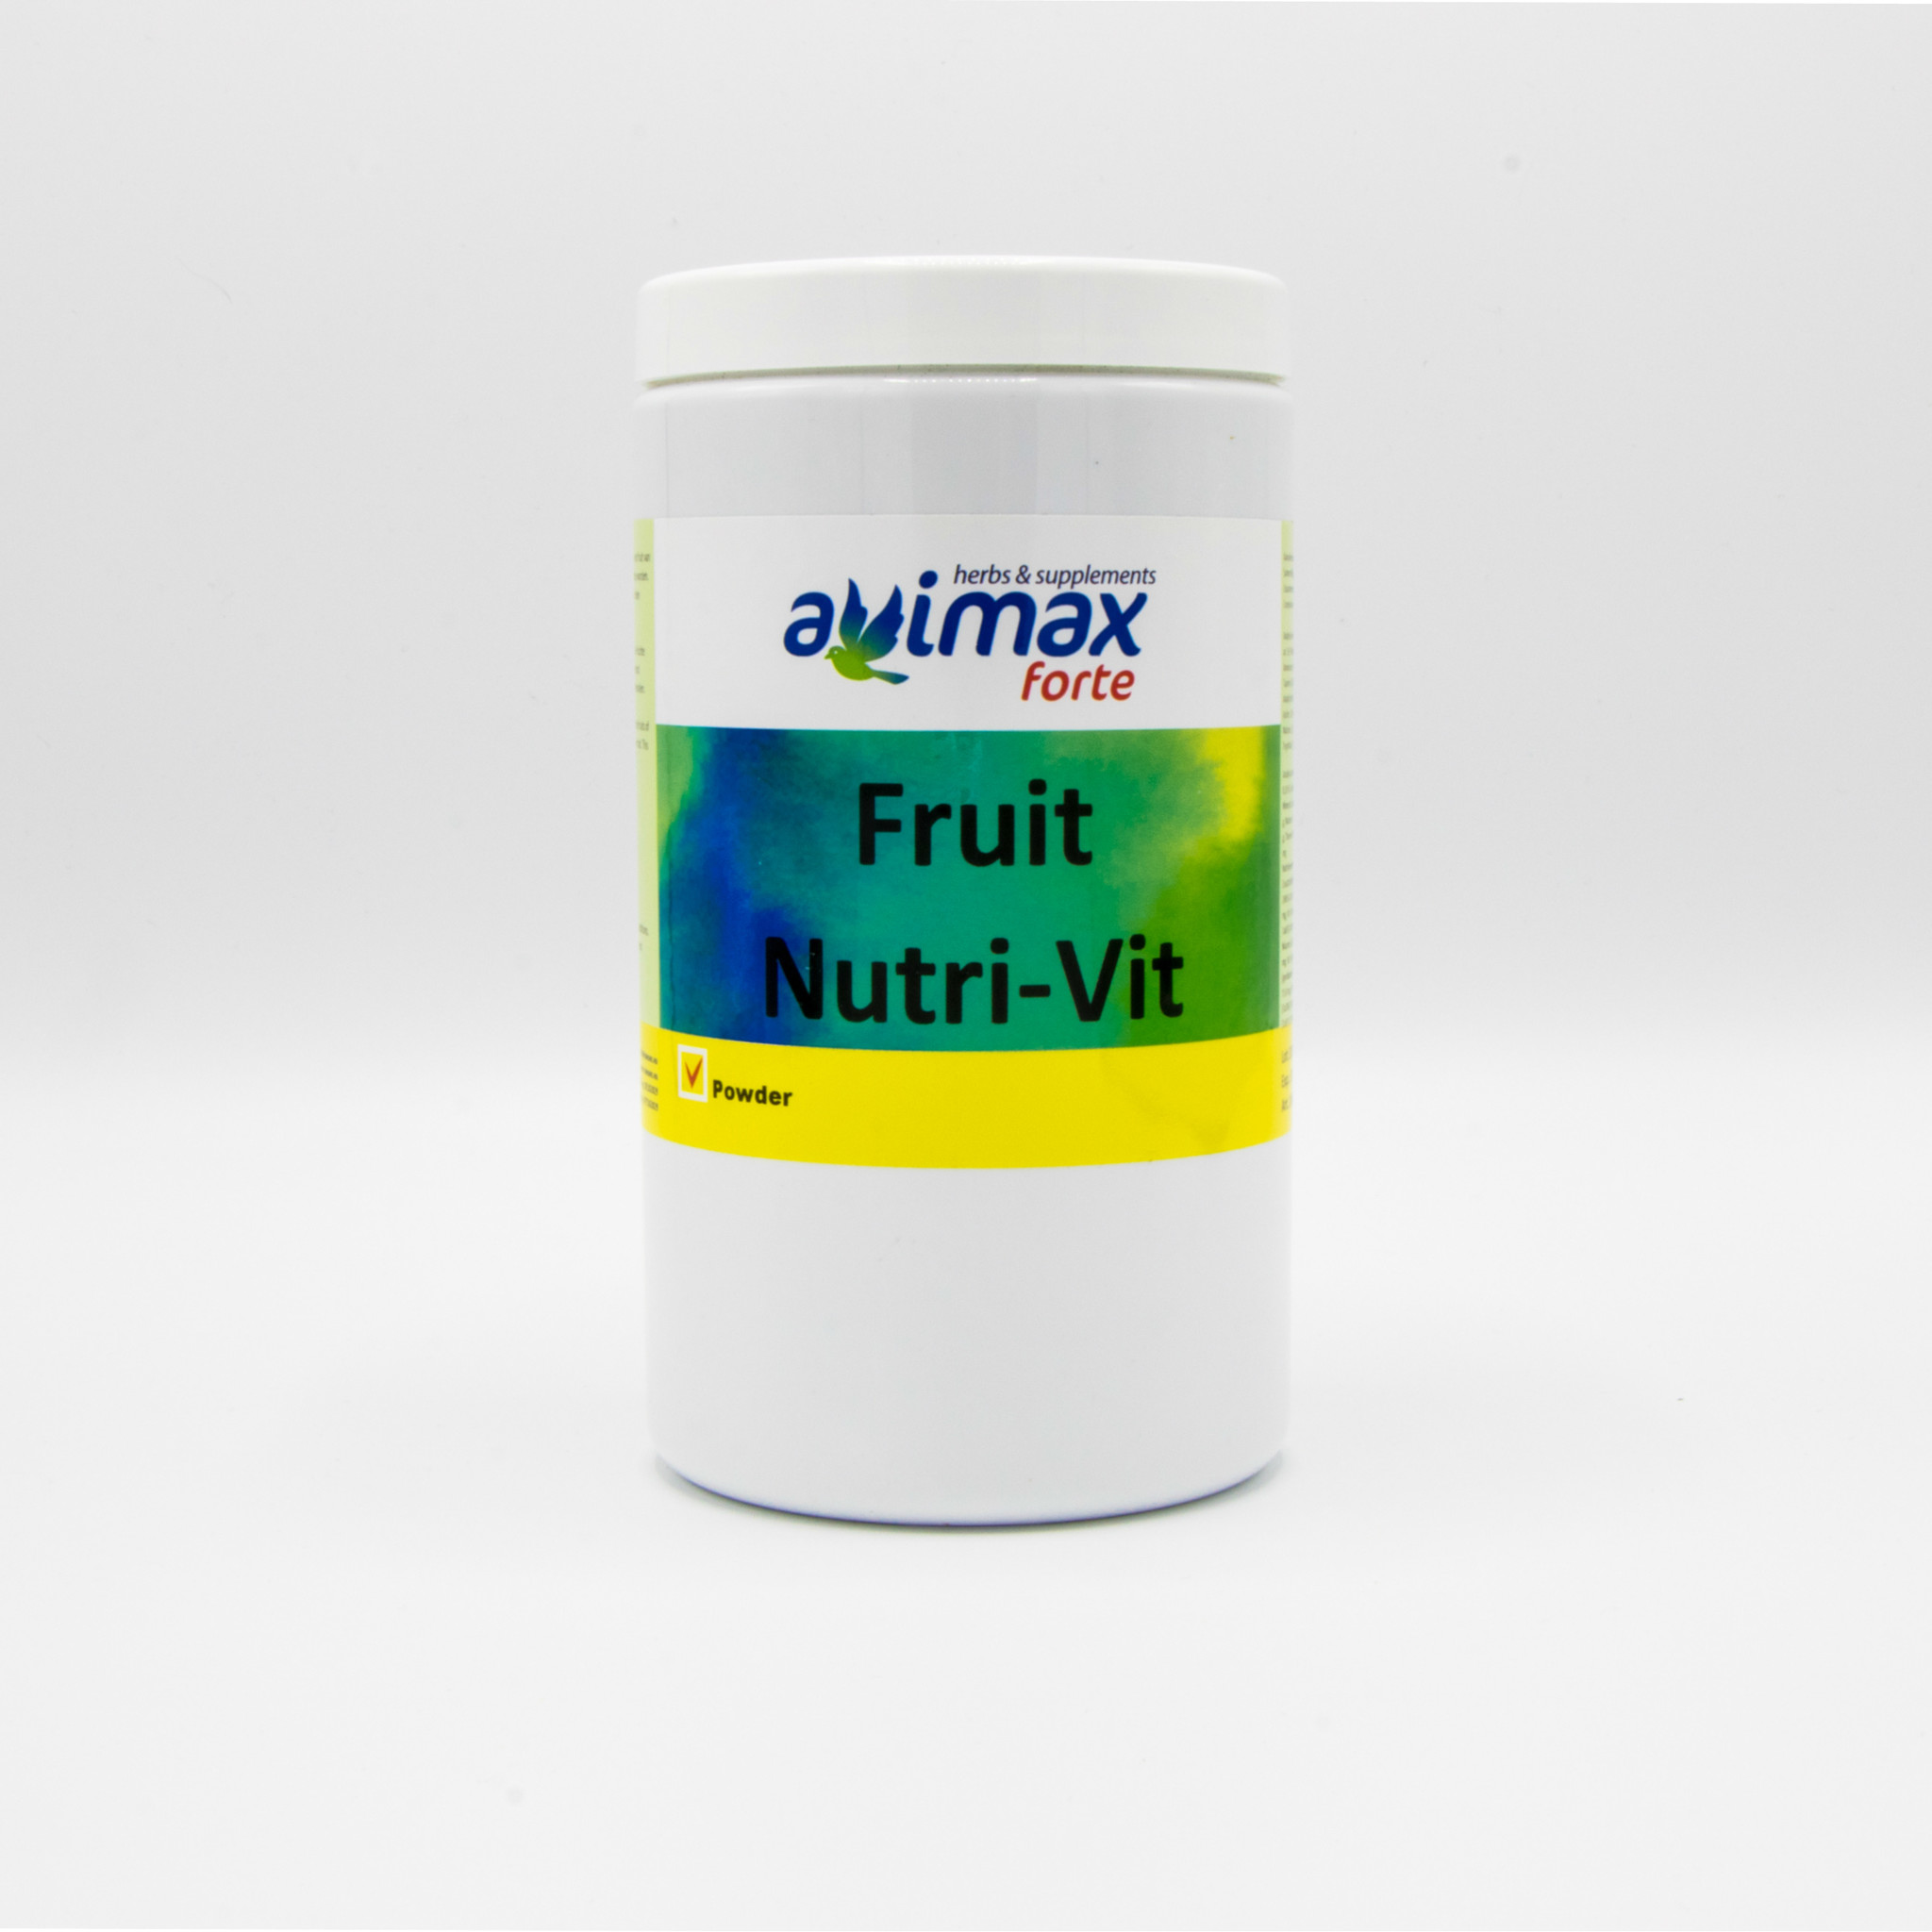 AviMax Forte AviMax Forte Fruit Nutri-Vit